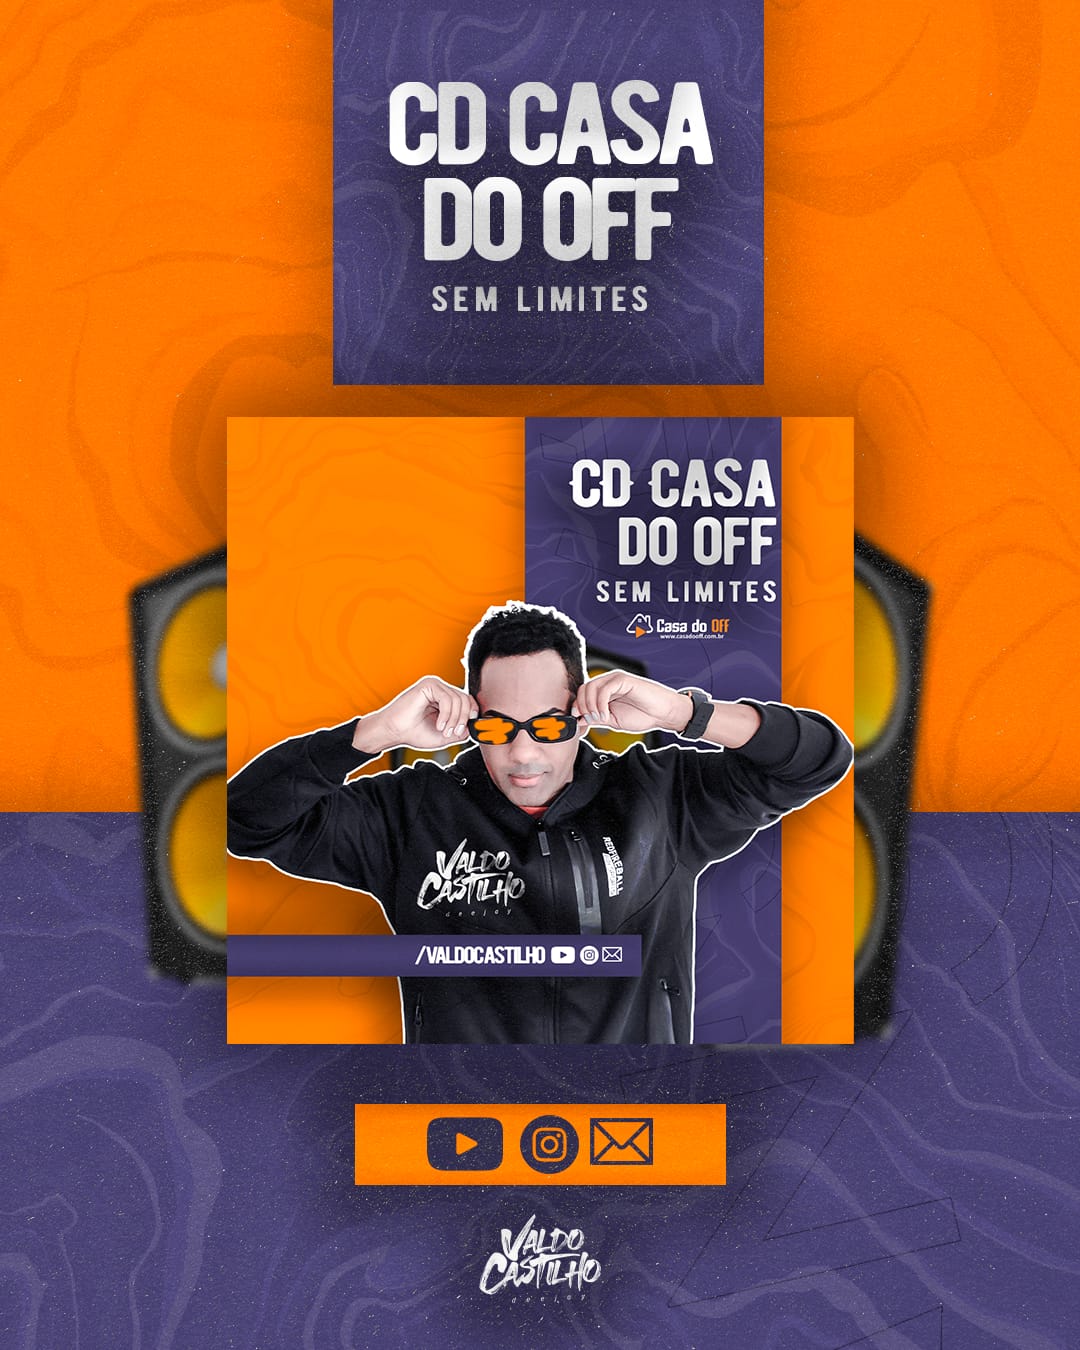 CD CASA DO OFF EDIÇÃO SEM LIMITES VOL 1 - DJ VALDO CASTILHO